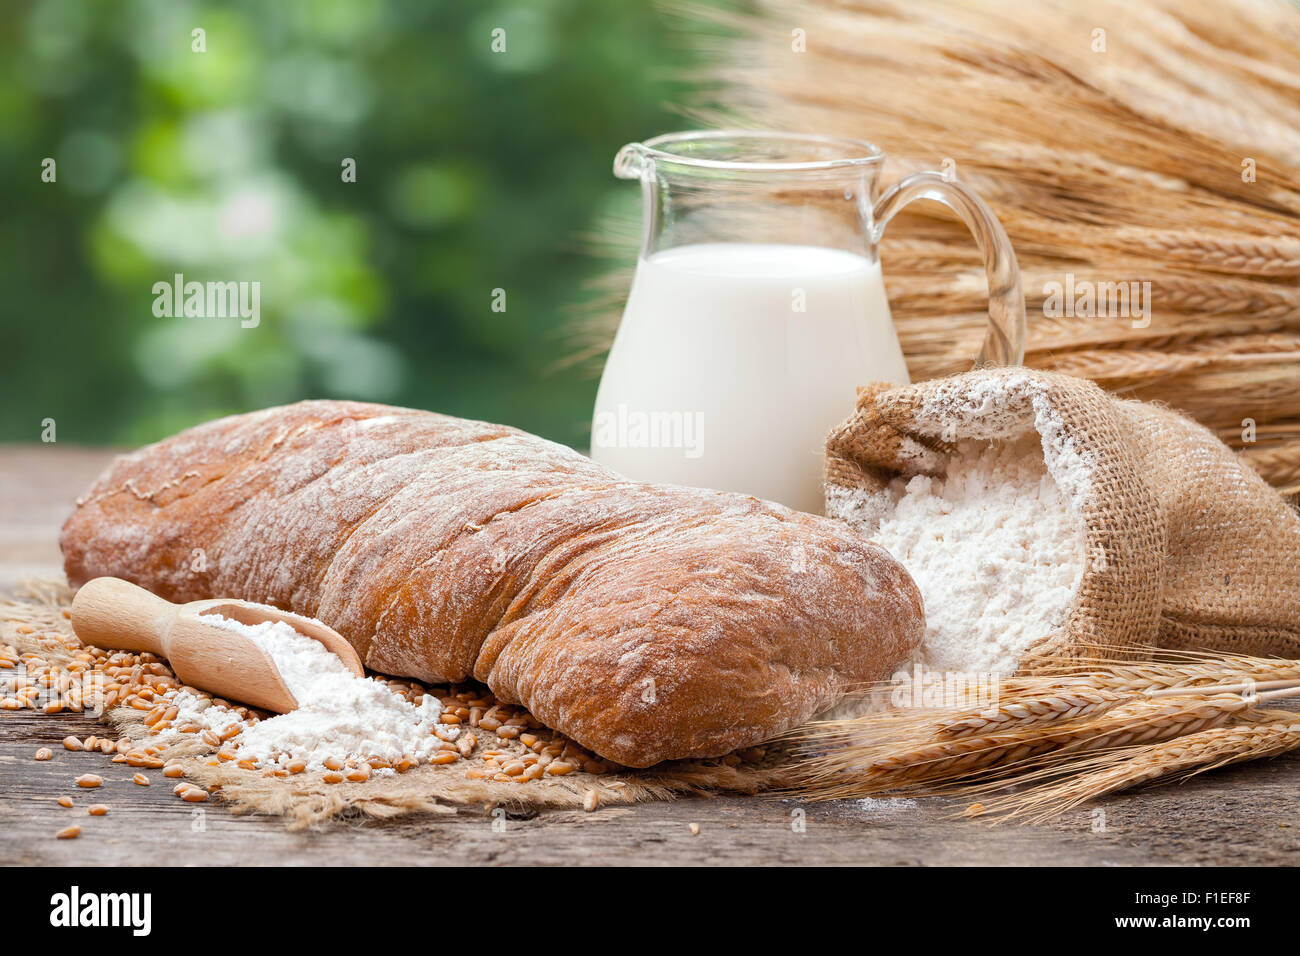 Pane fresco, brocca del latte, sacco di farina di grano e un covone di grano su un tavolo di legno. Foto Stock